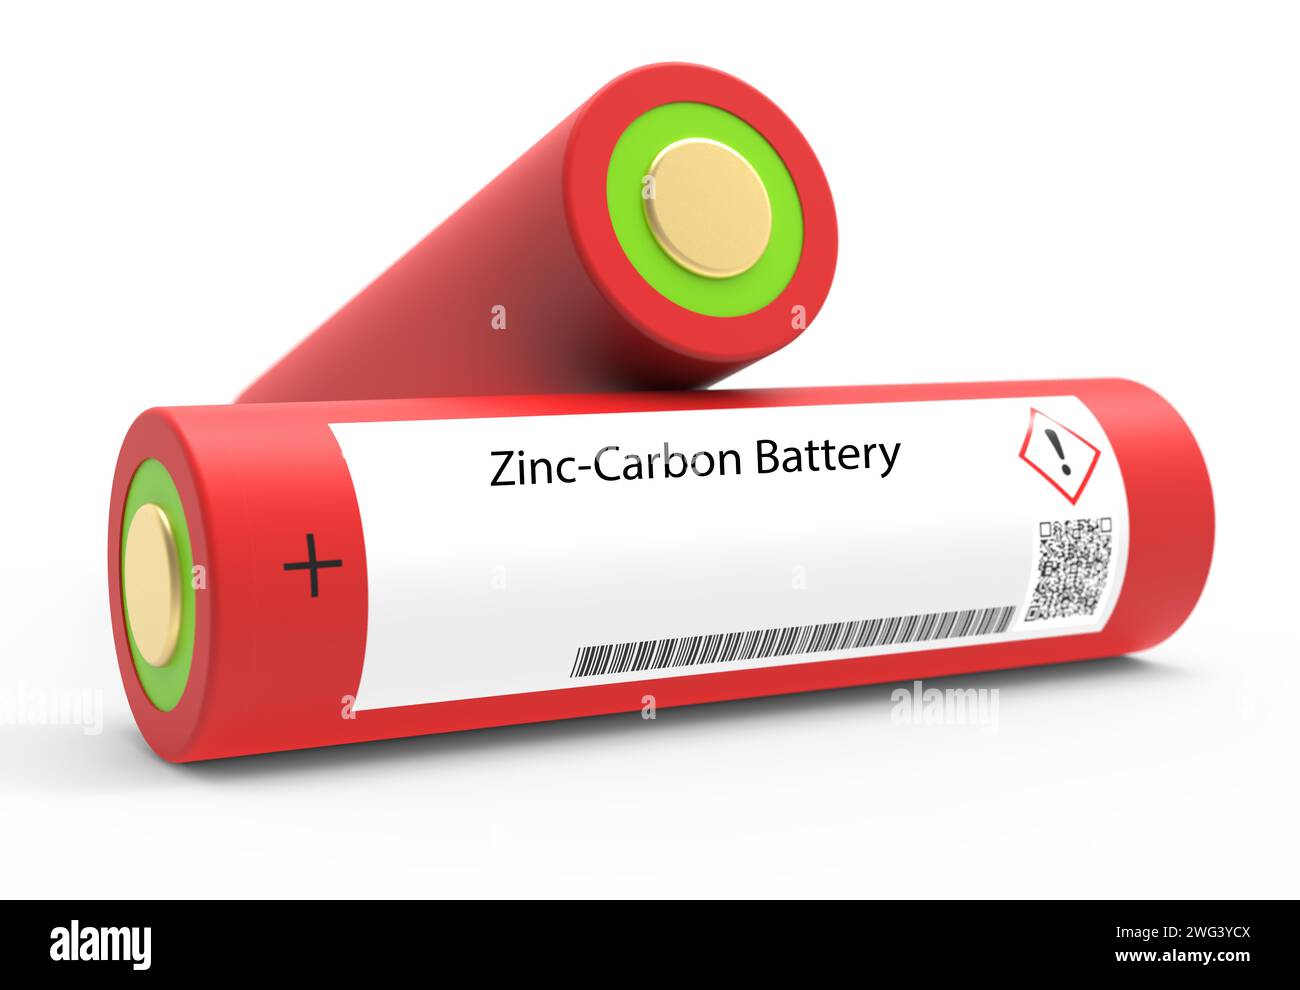 Zinc-carbon battery Stock Photo